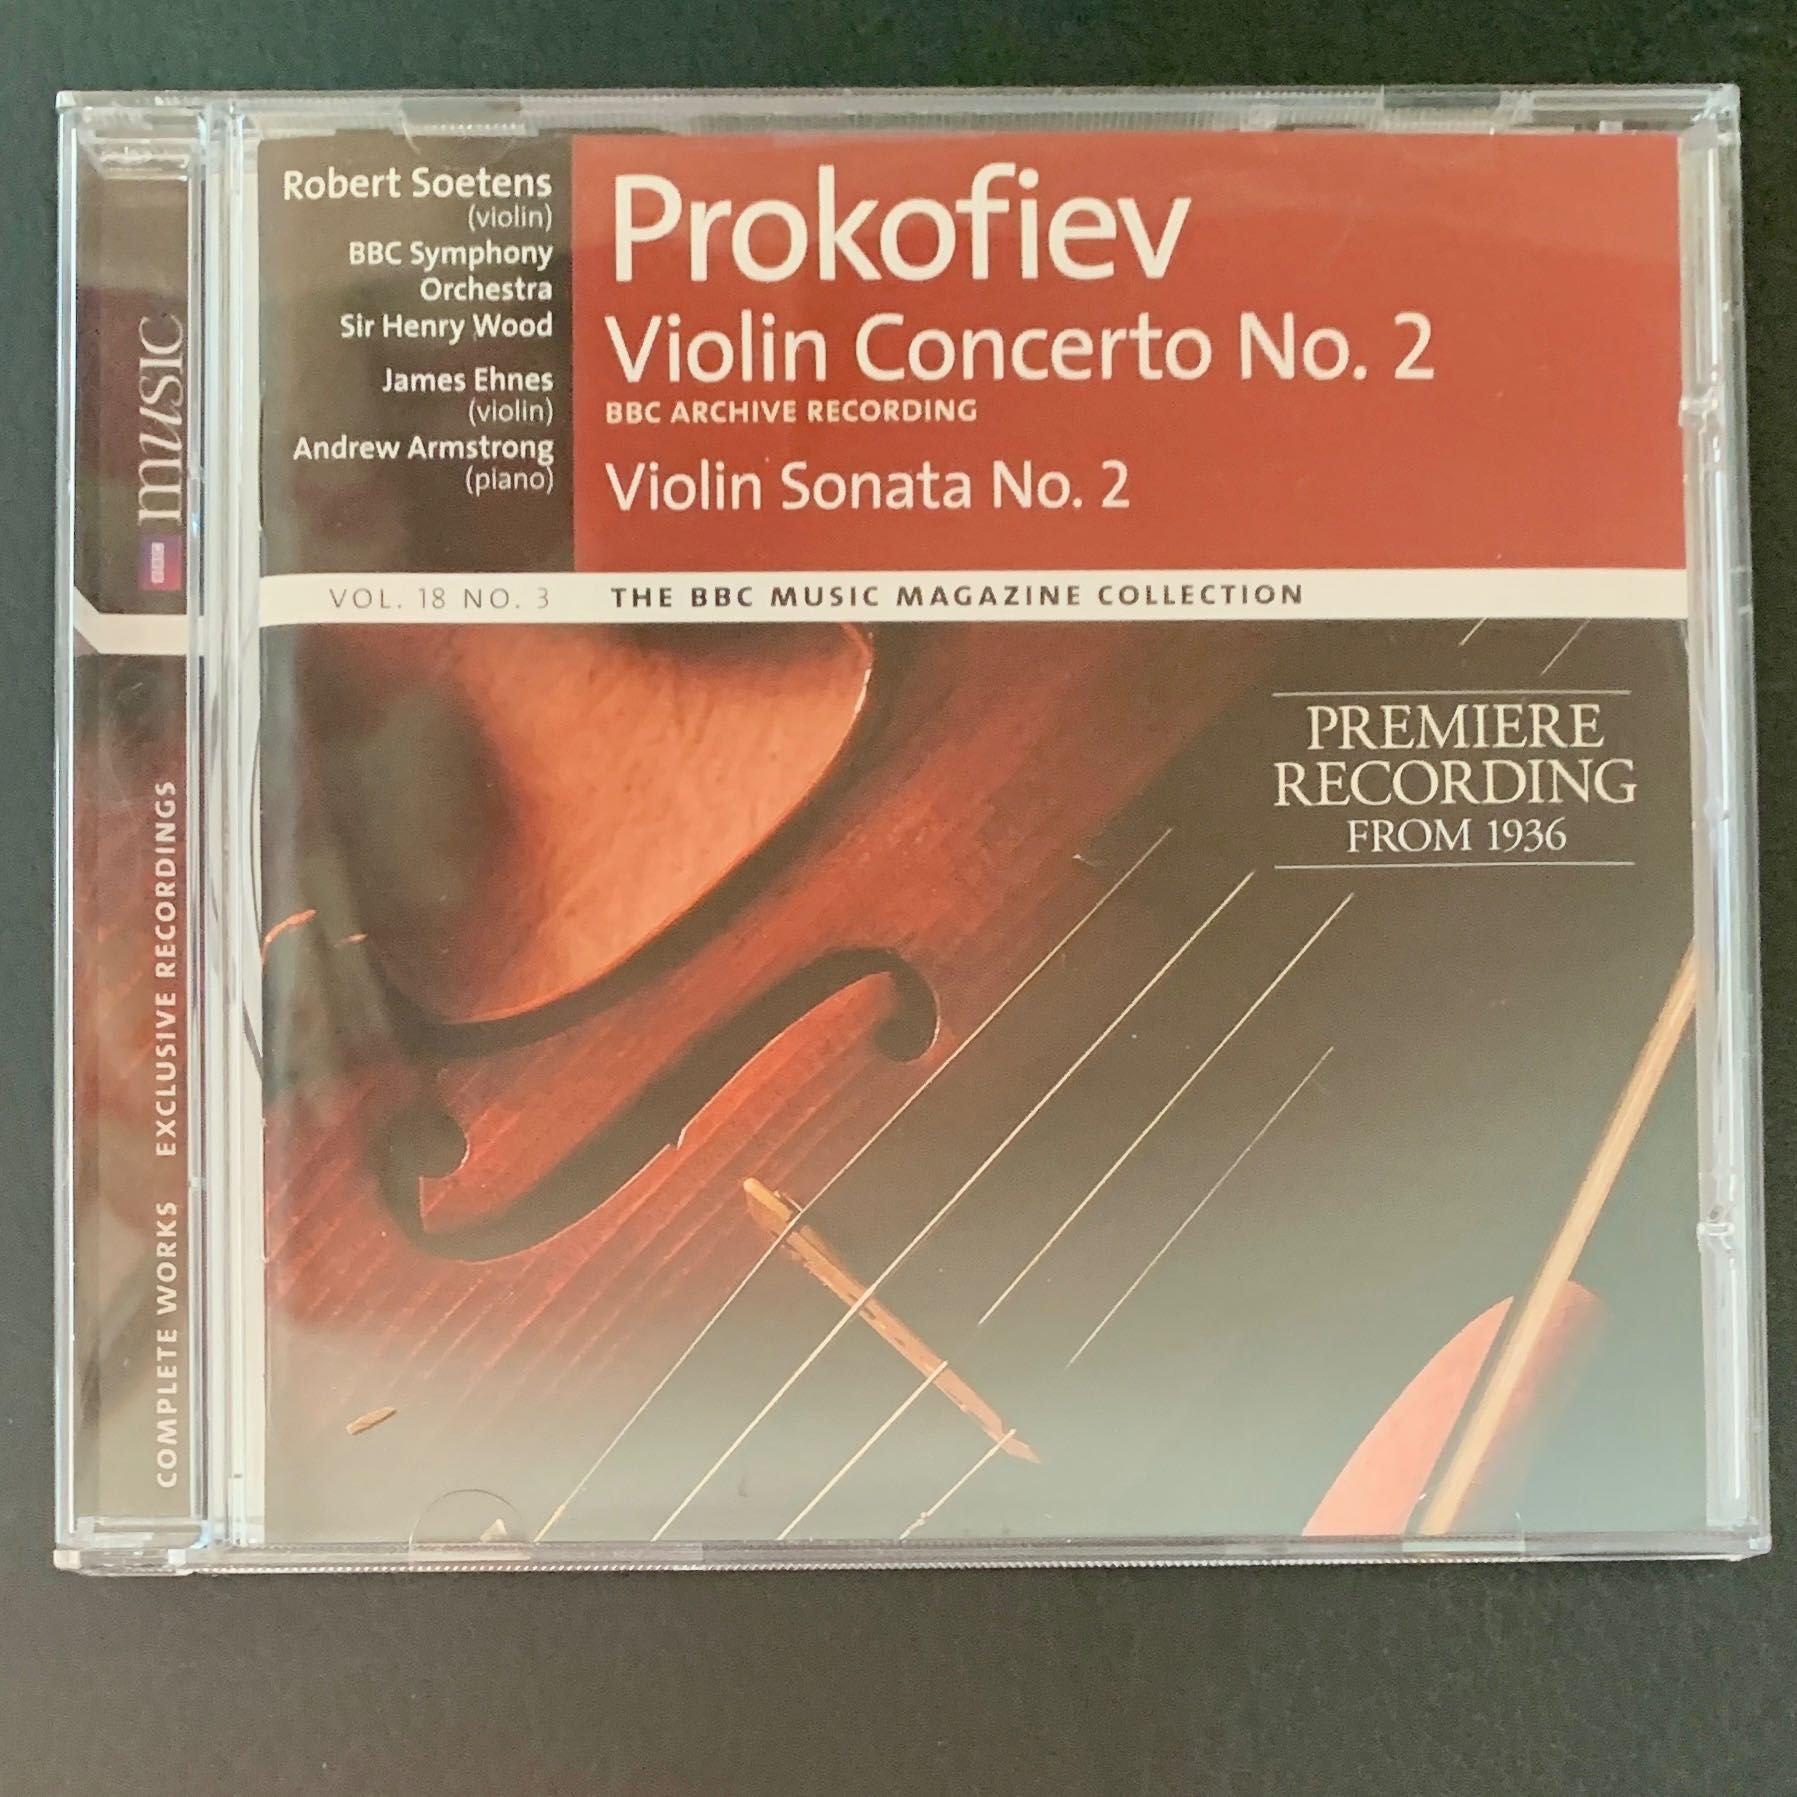 20. Prokofiev, Musorgski, Mendelssohn, Rimski-Korsakov, Borodin